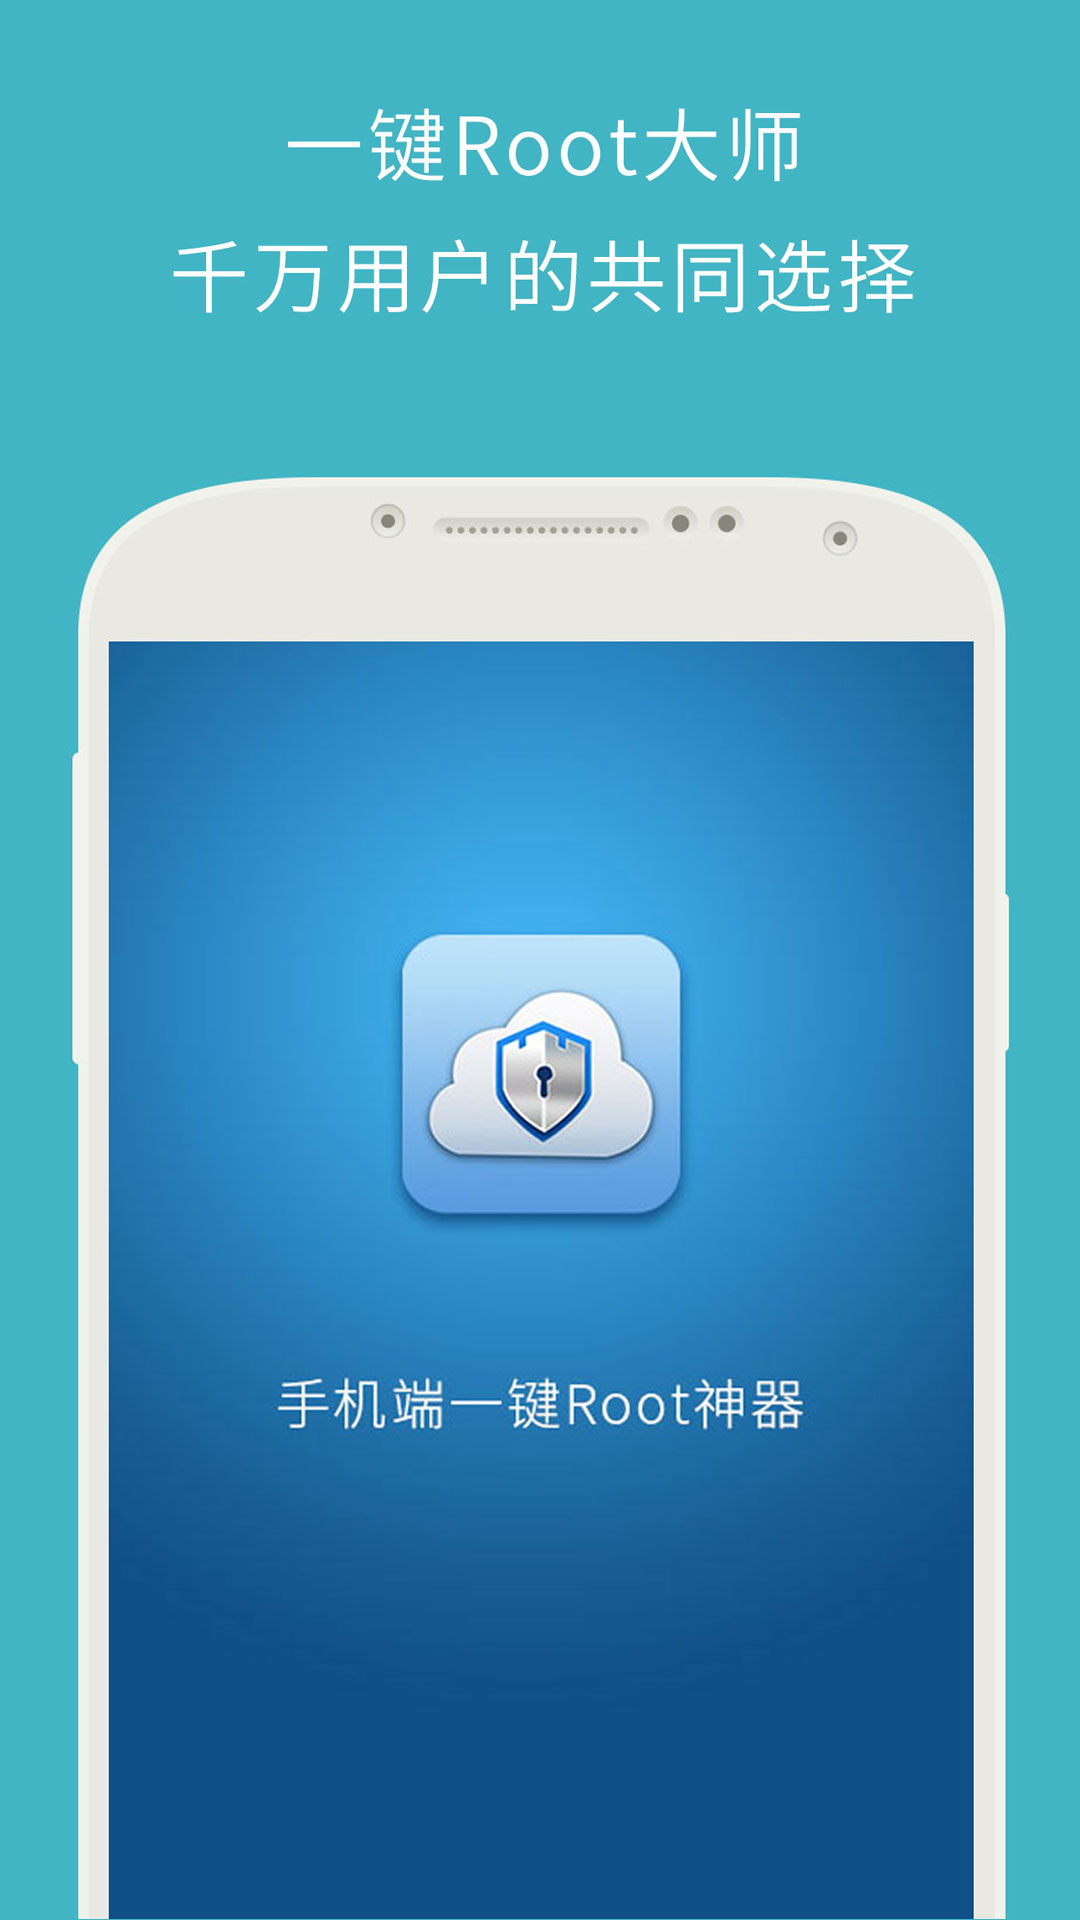 Z4root中文版下载 Z4root软件下载v5 0 官网安卓版 2265安卓网